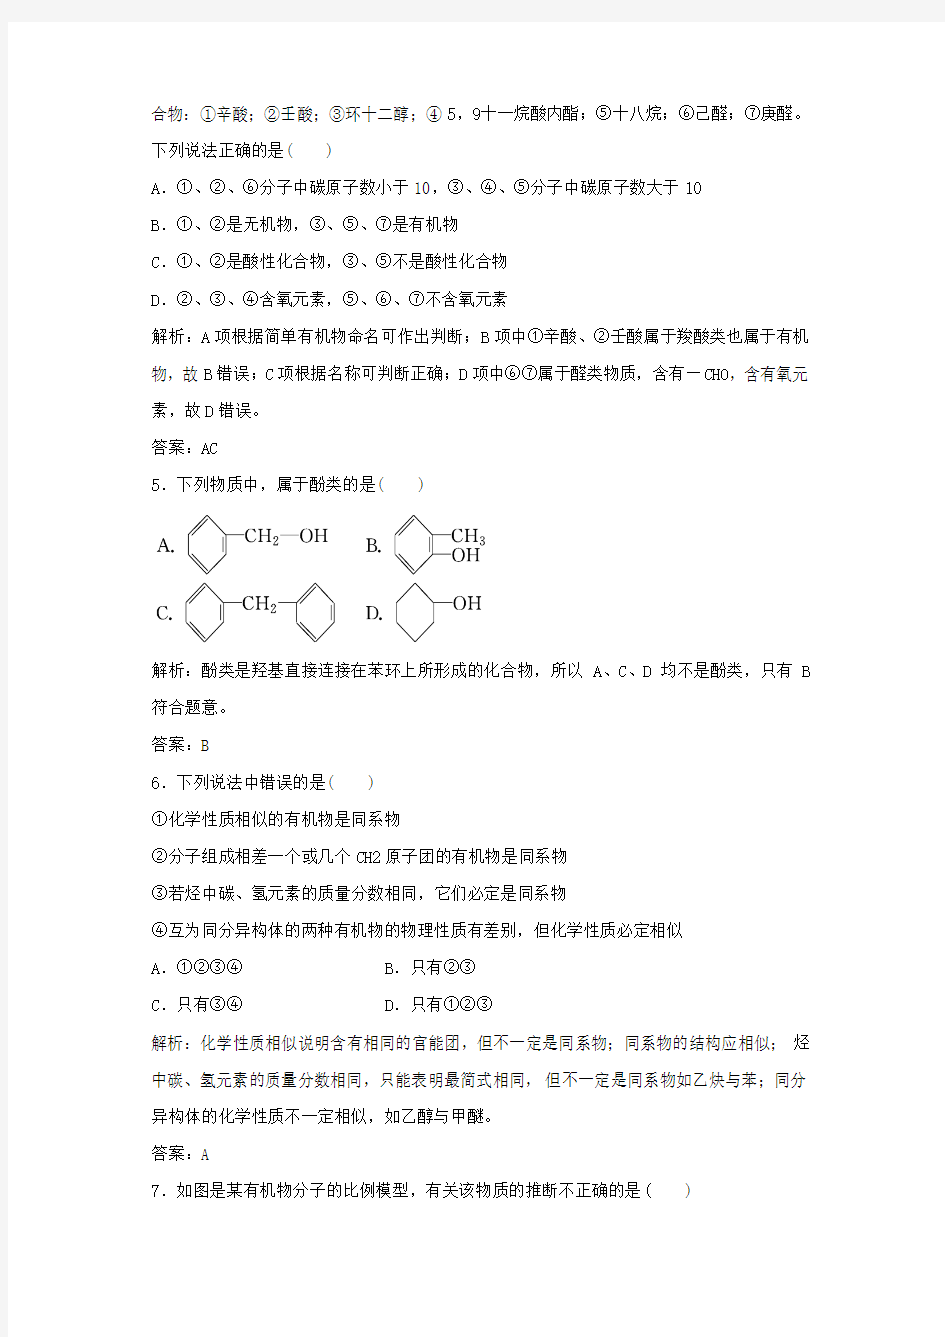 《有机化合物的分类和命名》习题3